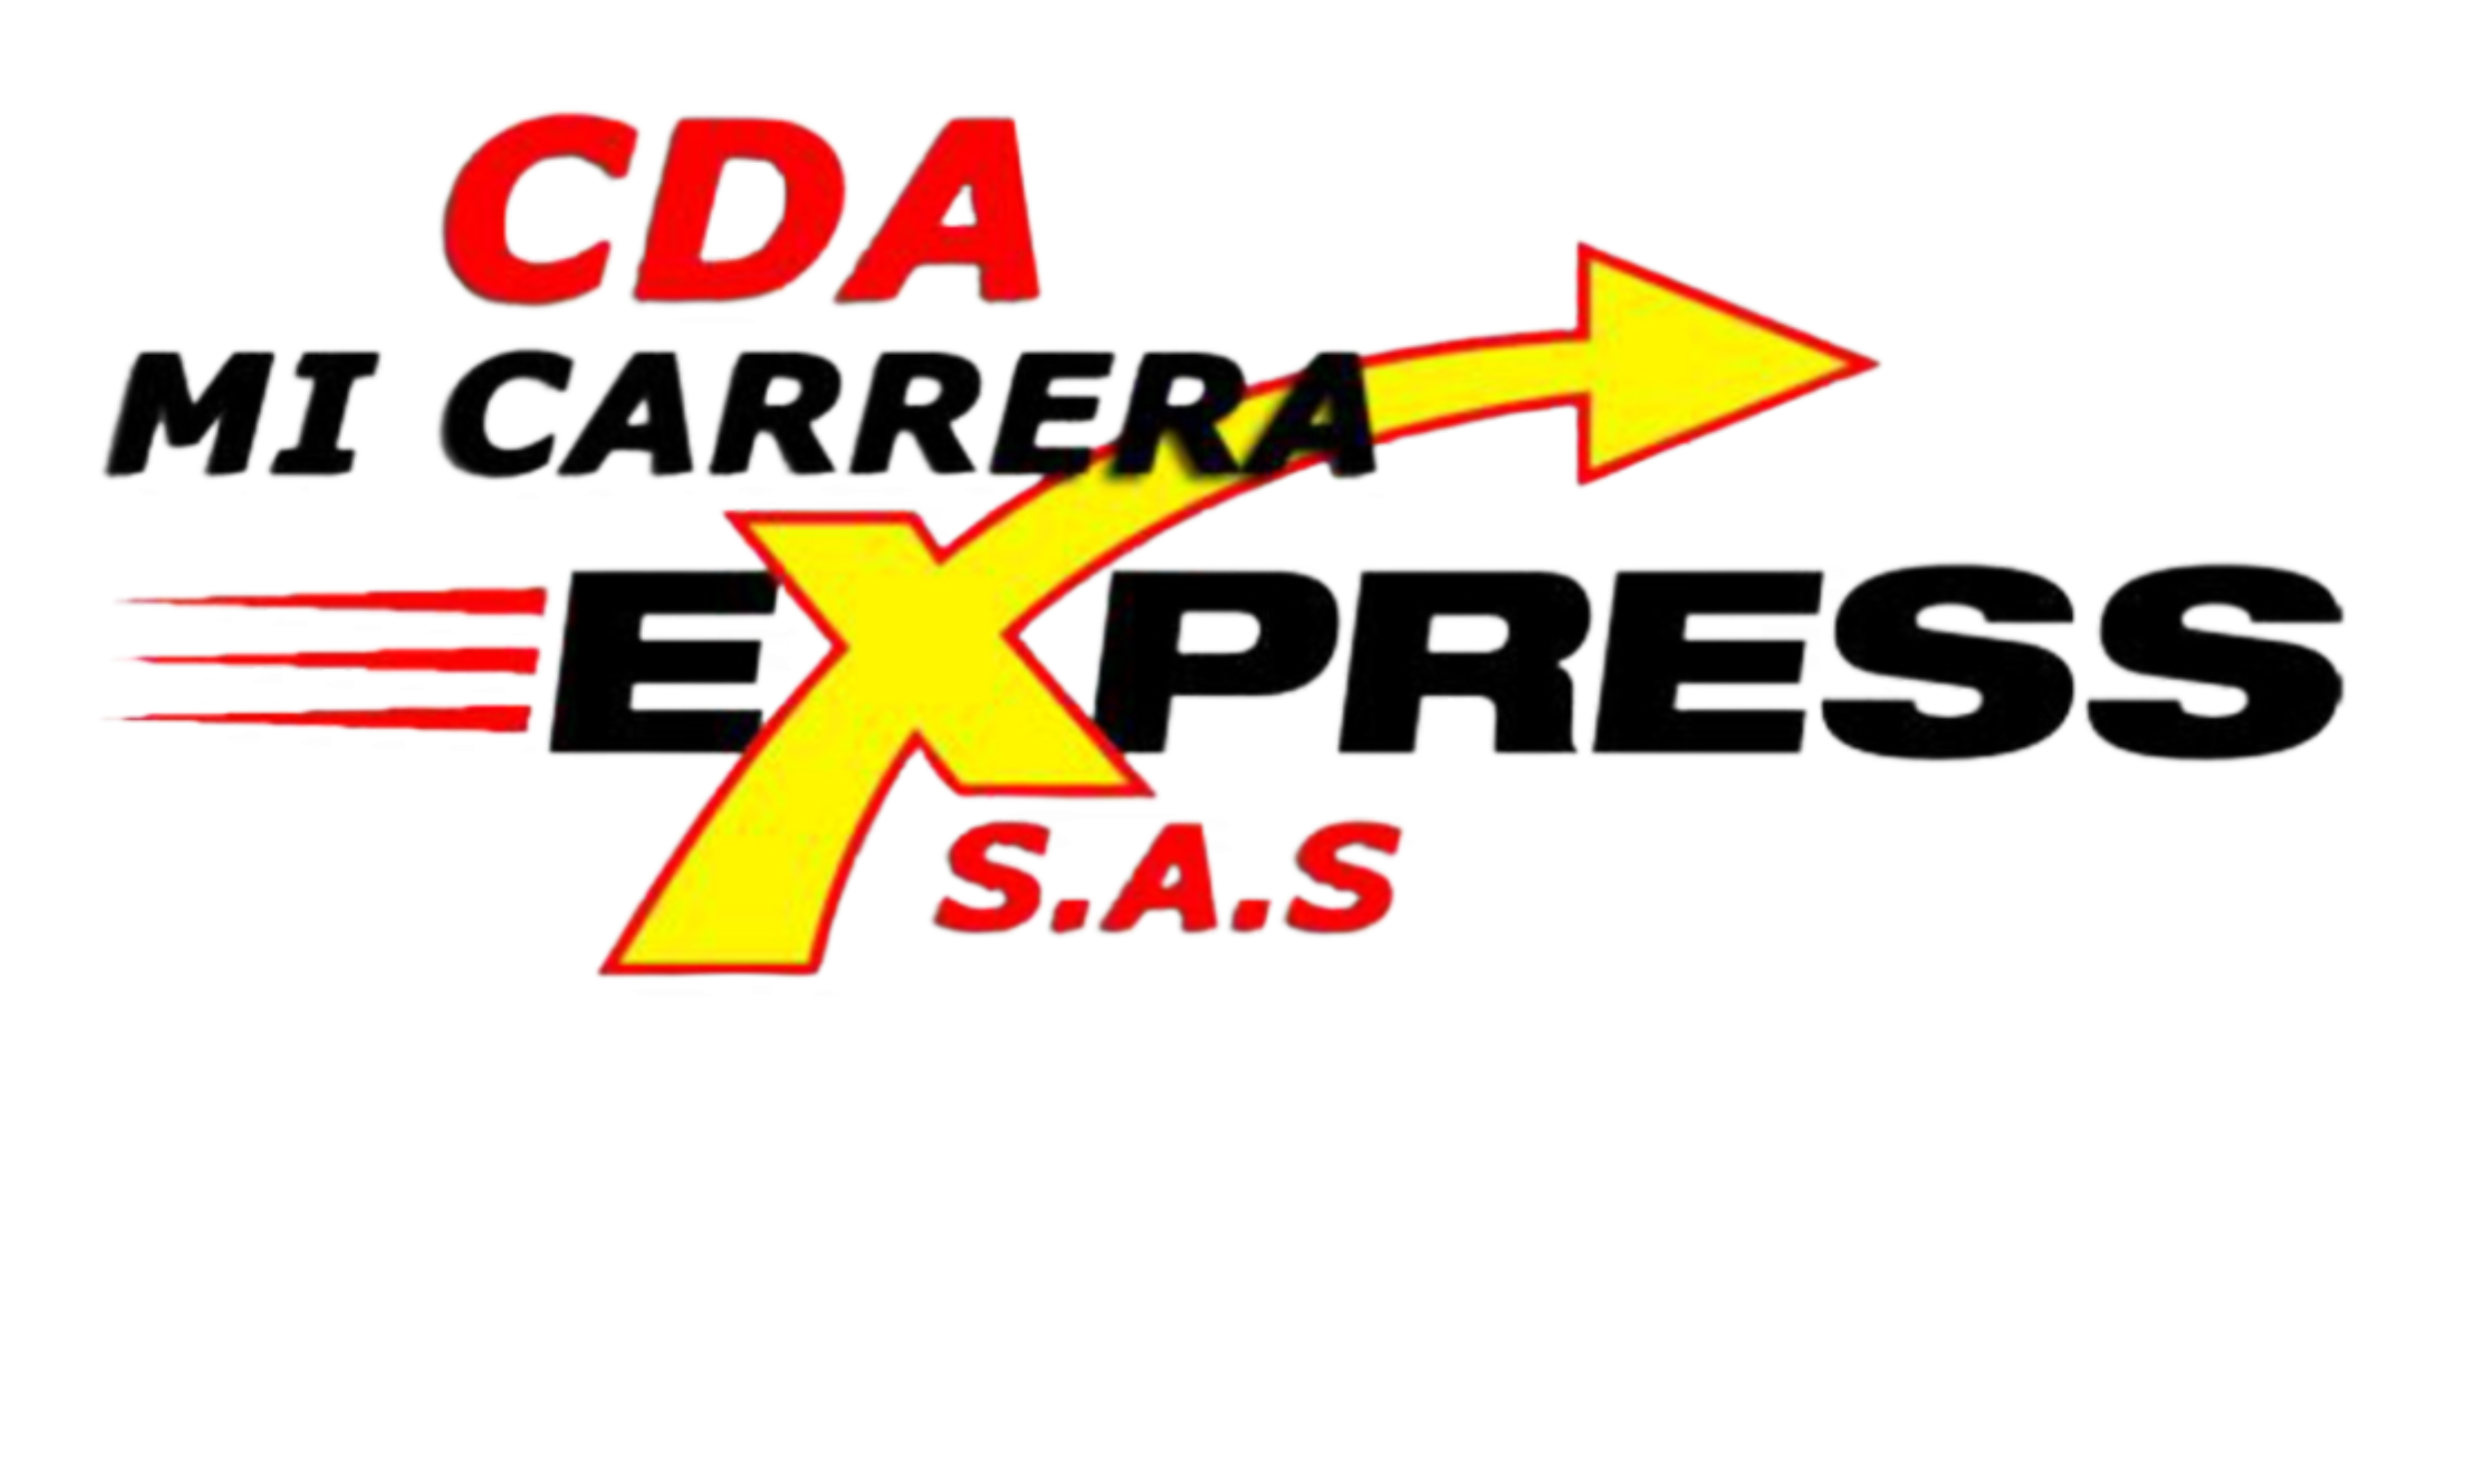 CDA MICARRERA EXPRESS